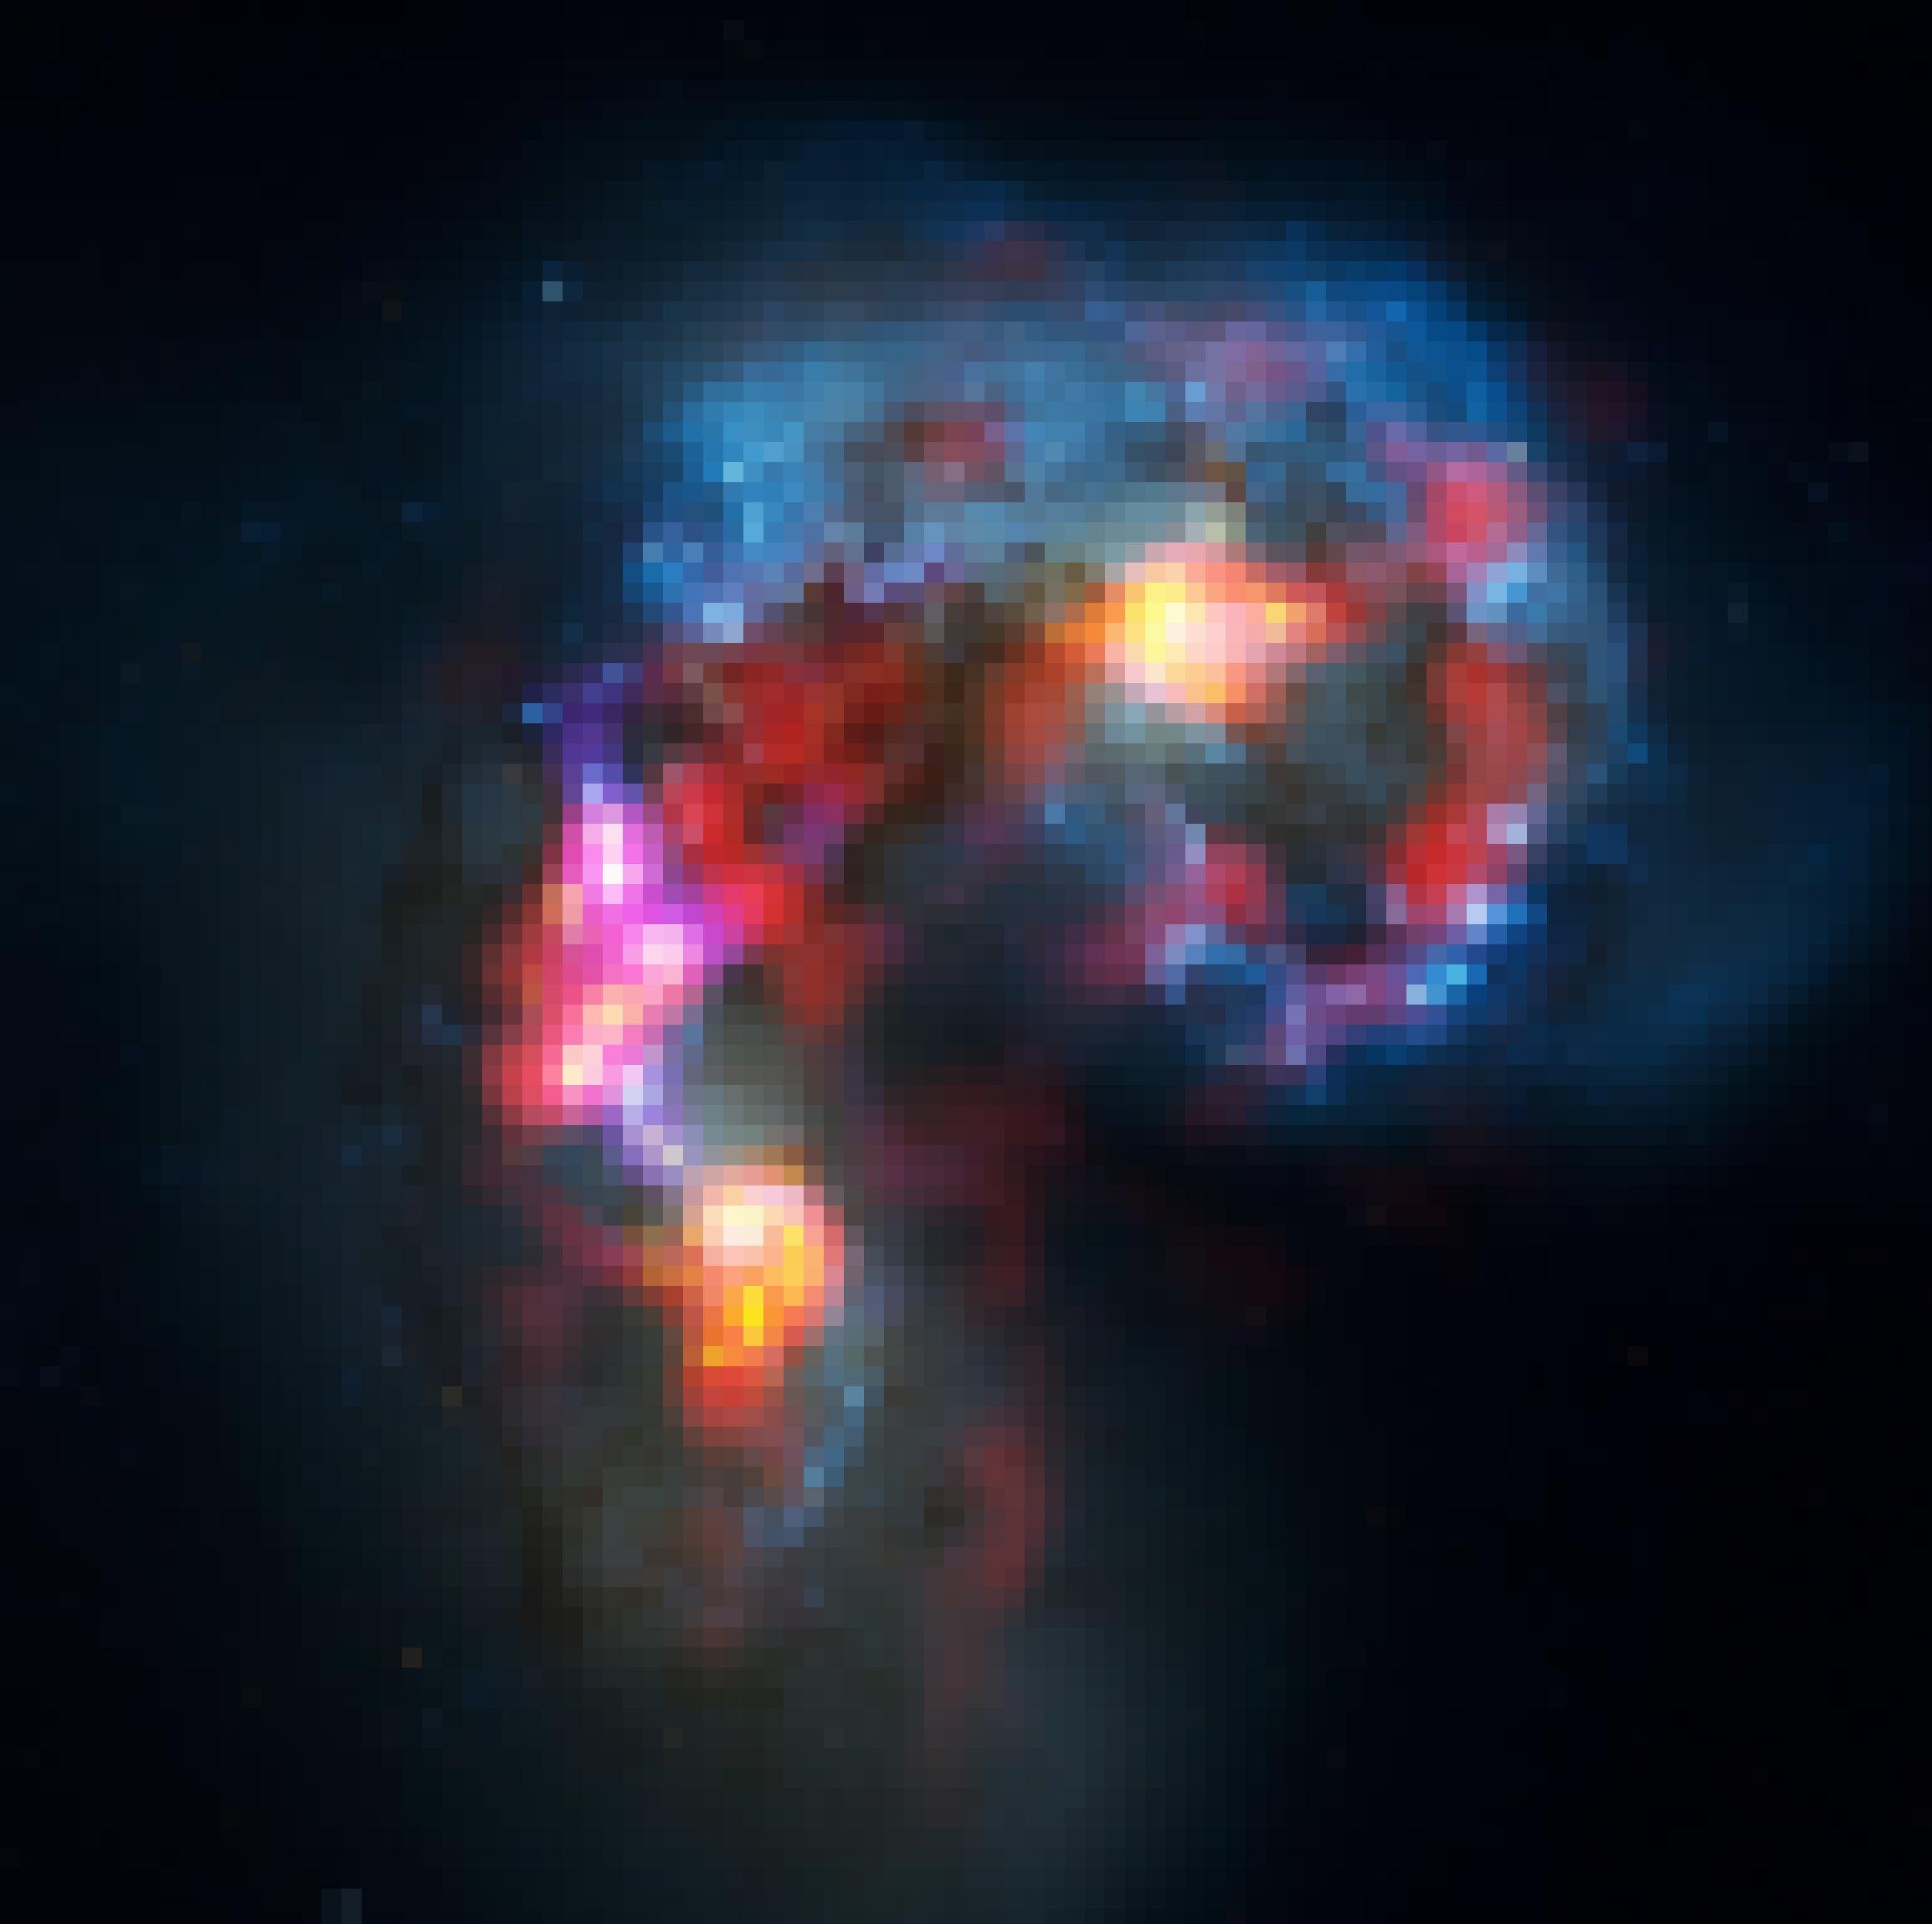 Die Antennengalaxien erzeugen beim Verschmelzen Sterne und Nebel. Die leuchten in gelb, rot und blau vor dem Schwarz des Alls und bilden eine Herzform.